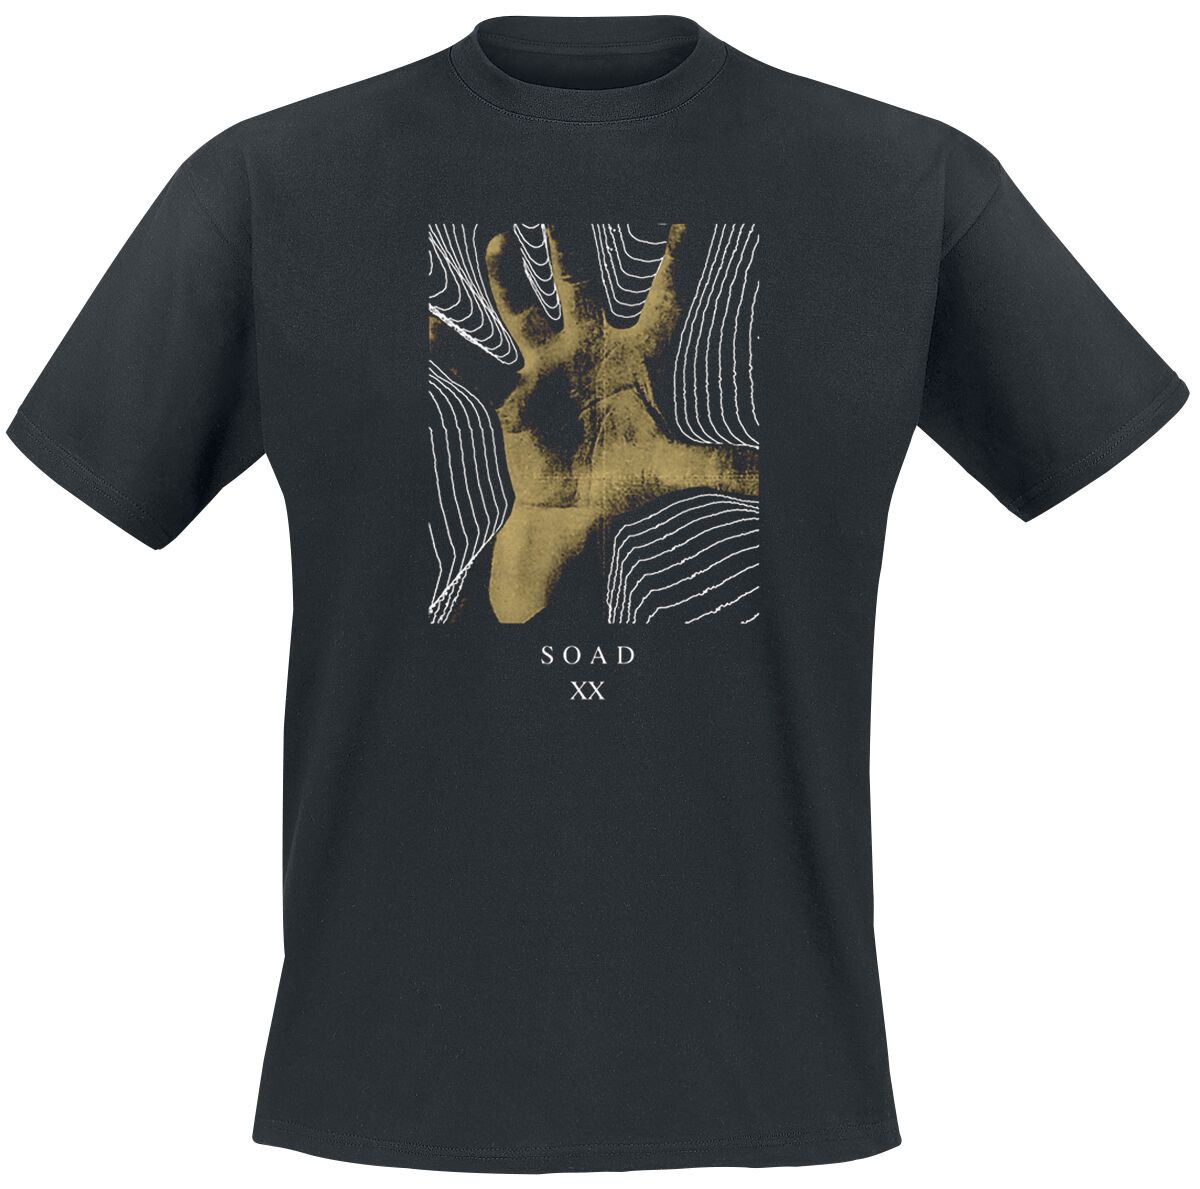 System Of A Down T-Shirt - 20 Years Hand - S bis XXL - für Männer - Größe XL - schwarz  - Lizenziertes Merchandise!